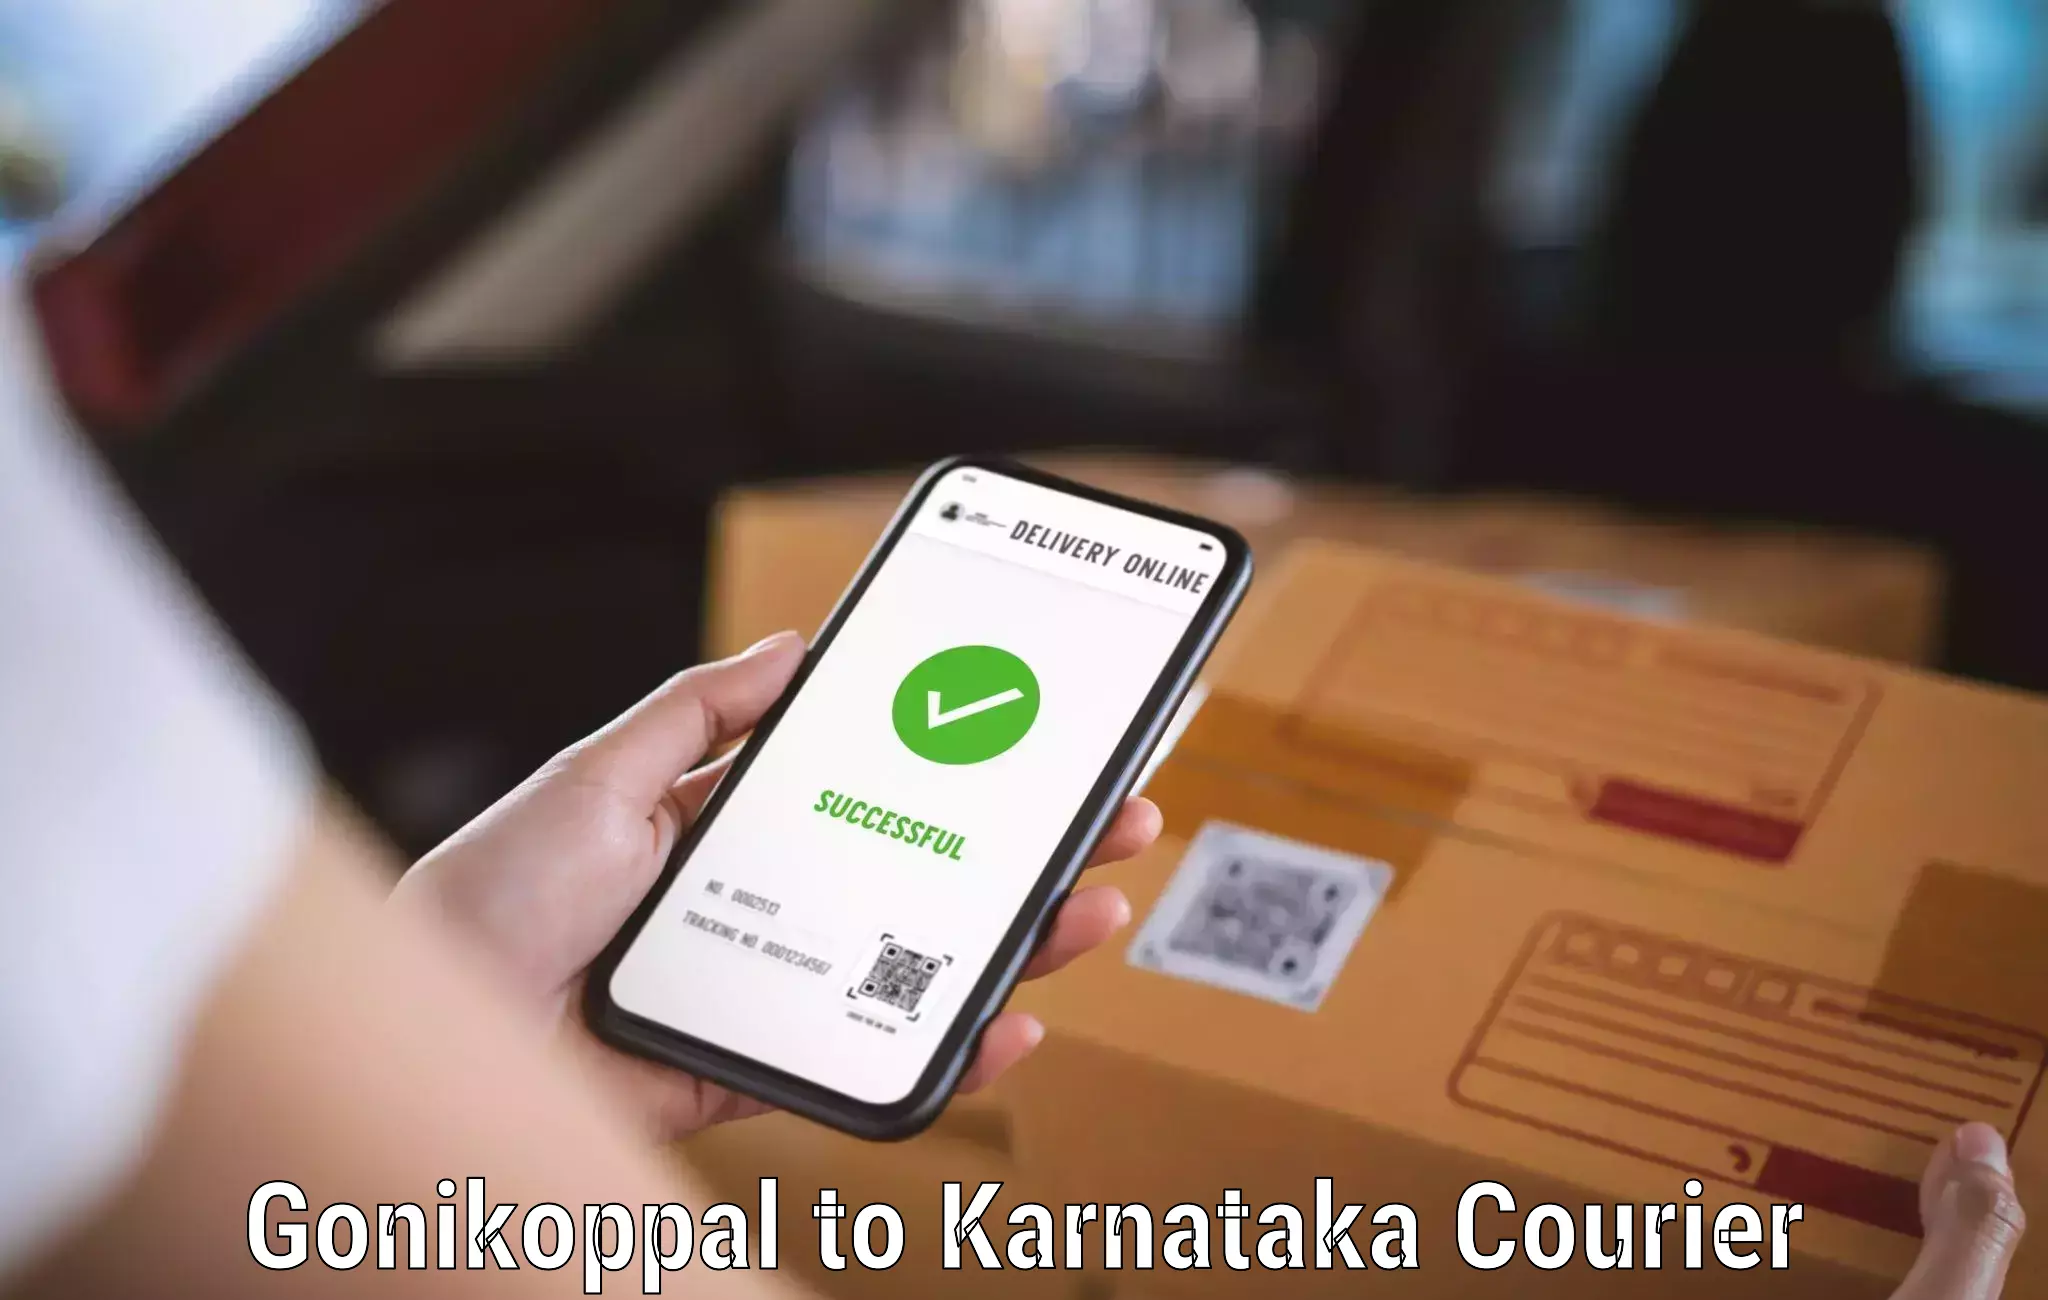 Quick dispatch service Gonikoppal to Uttara Kannada